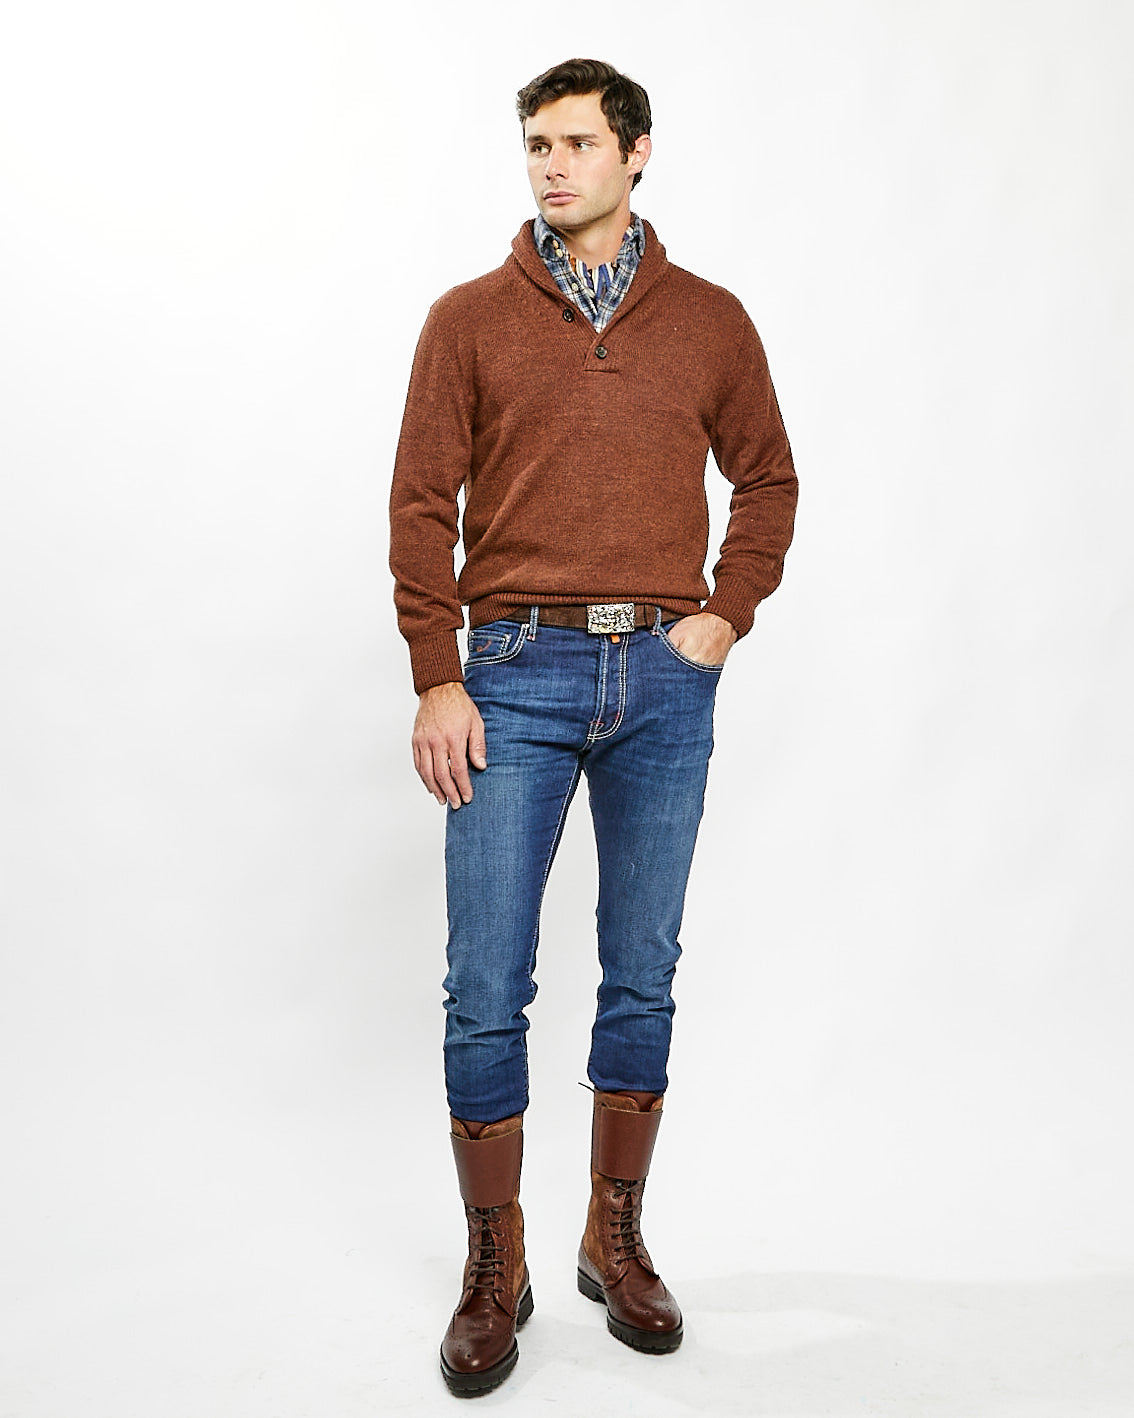 Knit Shawl Collar Sweater in Rust